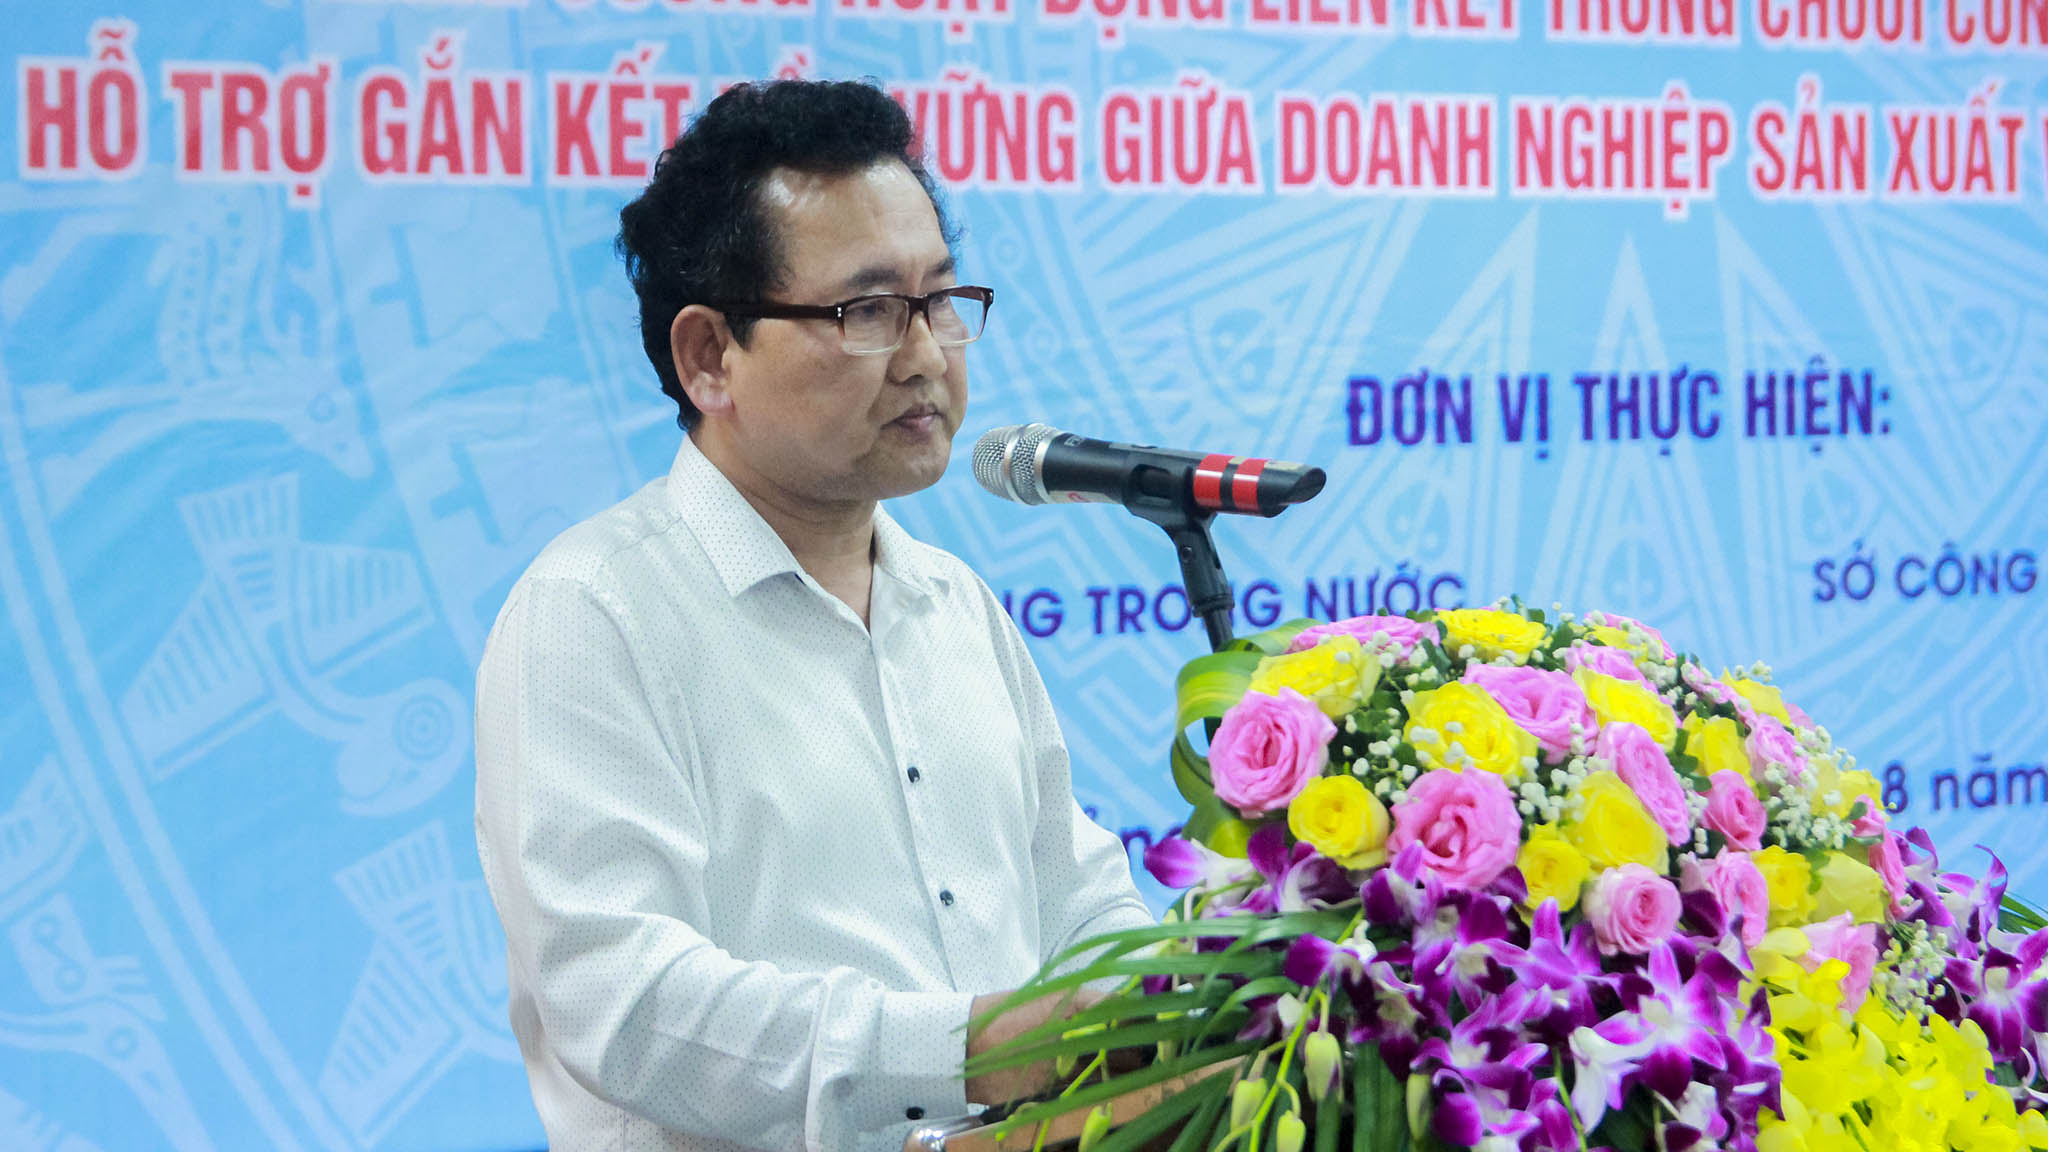 Ông Phạm Quang Thái - Phó Giám đốc Sở Công Thương tỉnh Quảng Ninh